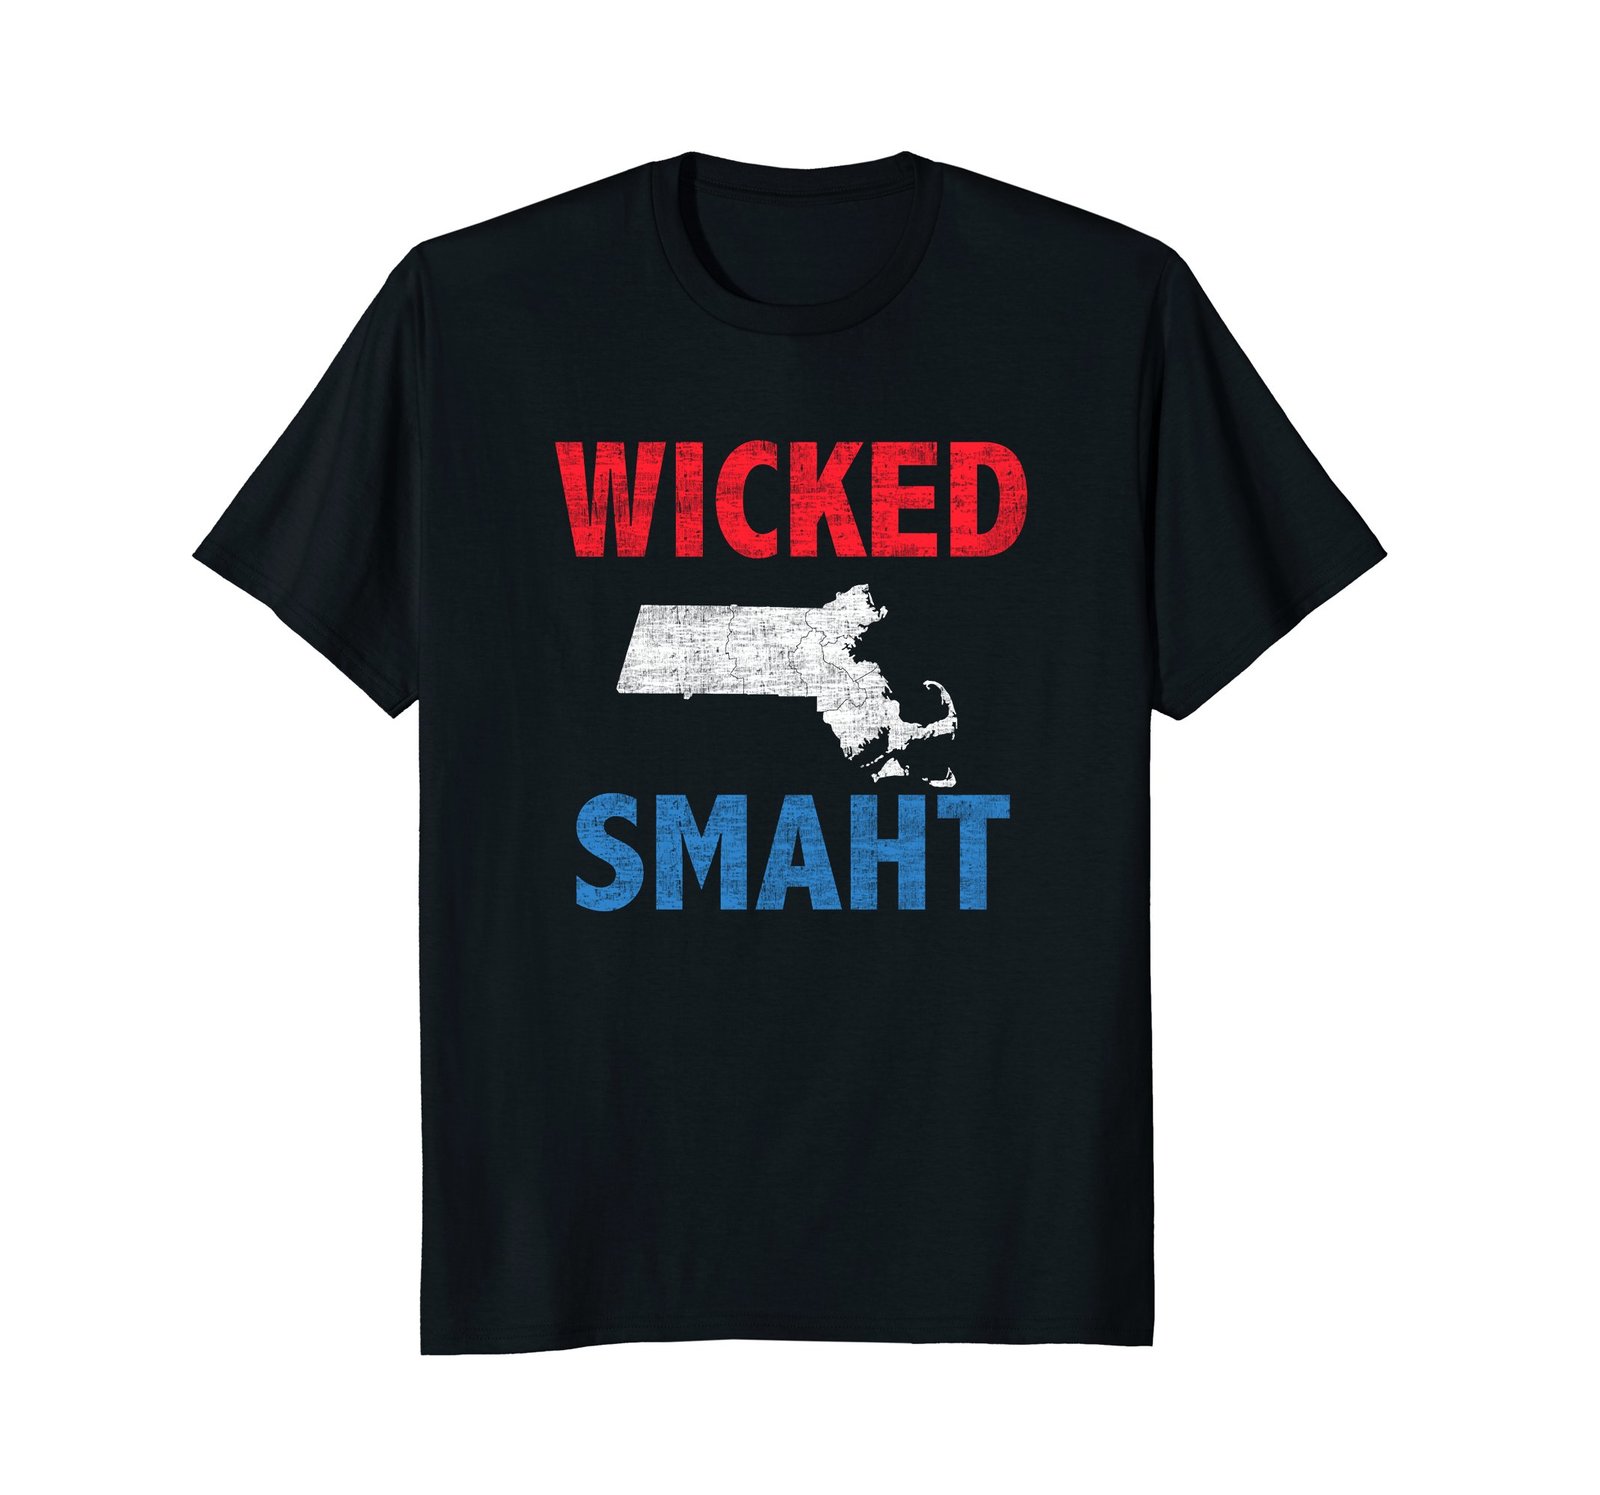 Wicked Smaht T-shirt Funny Boston Tee - T-Shirts, Tank Tops